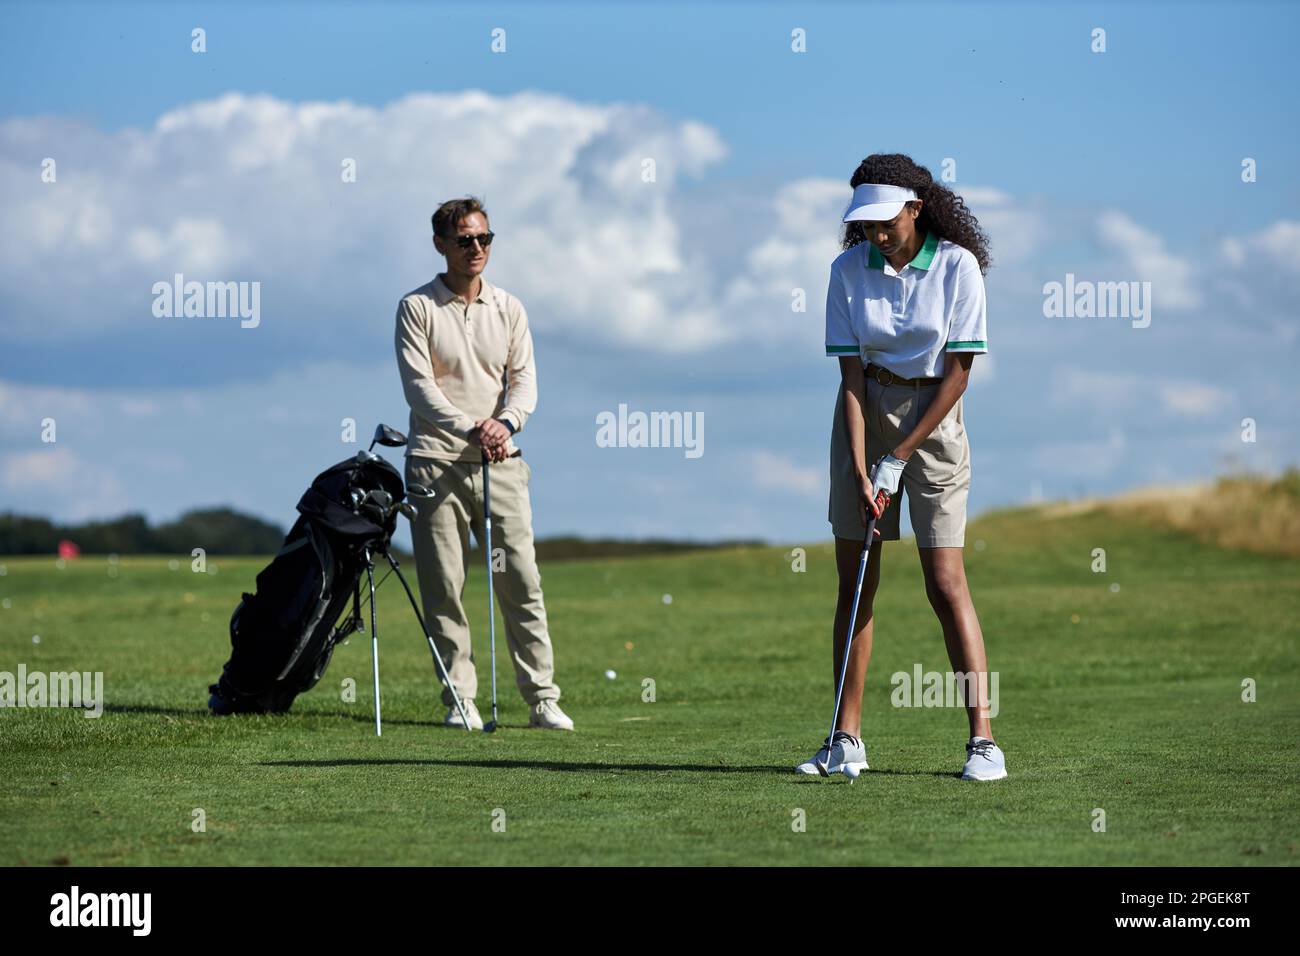 Ein langes Porträt eines sportlichen jungen Paares, das Golf auf dem grünen Feld spielt, mit Fokus auf einer schwarzen Frau, die mit dem Schläger Ball schlägt Stockfoto